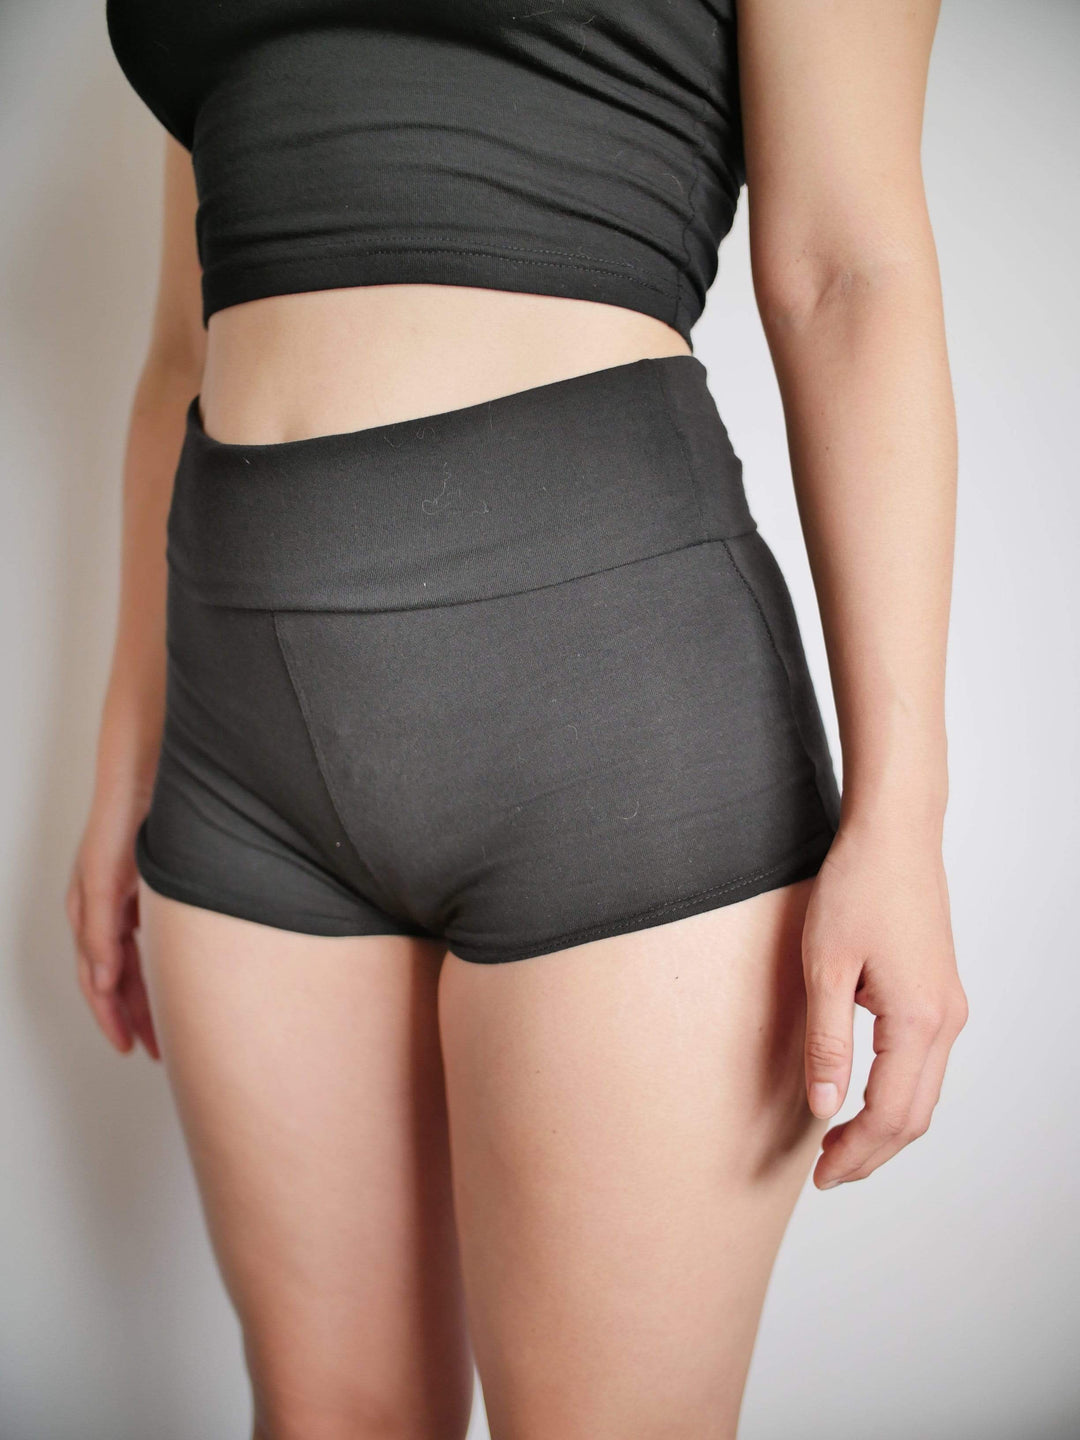 PixelThat Punderwear Yoga Shorts Weeaboo Trash Yoga Shorts/Pants